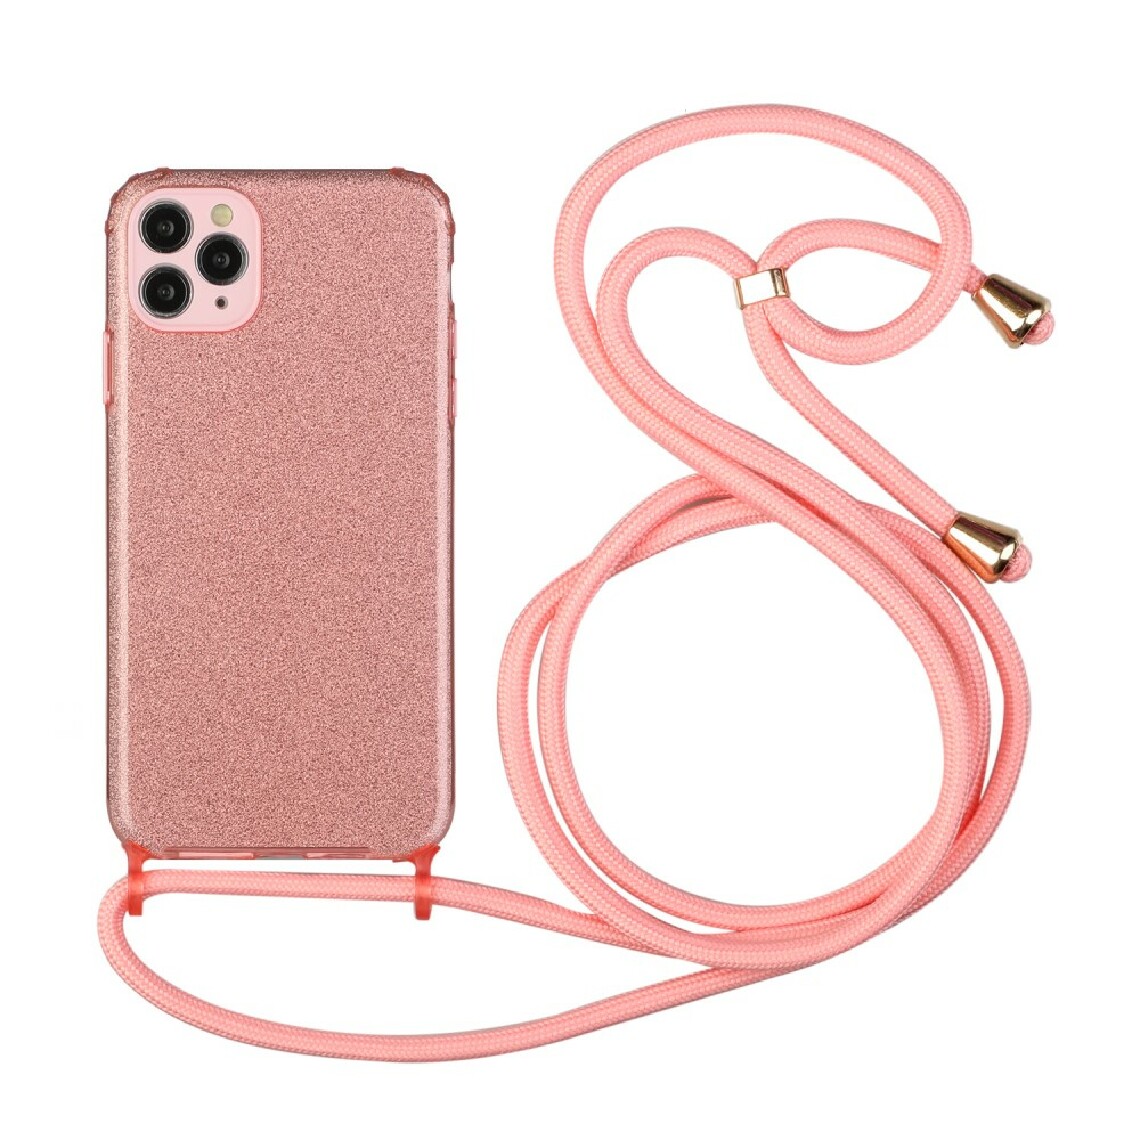 Other - Coque en TPU poudre scintillante souple avec sangle réglable rose pour votre Apple iPhone 11 Pro - Coque, étui smartphone